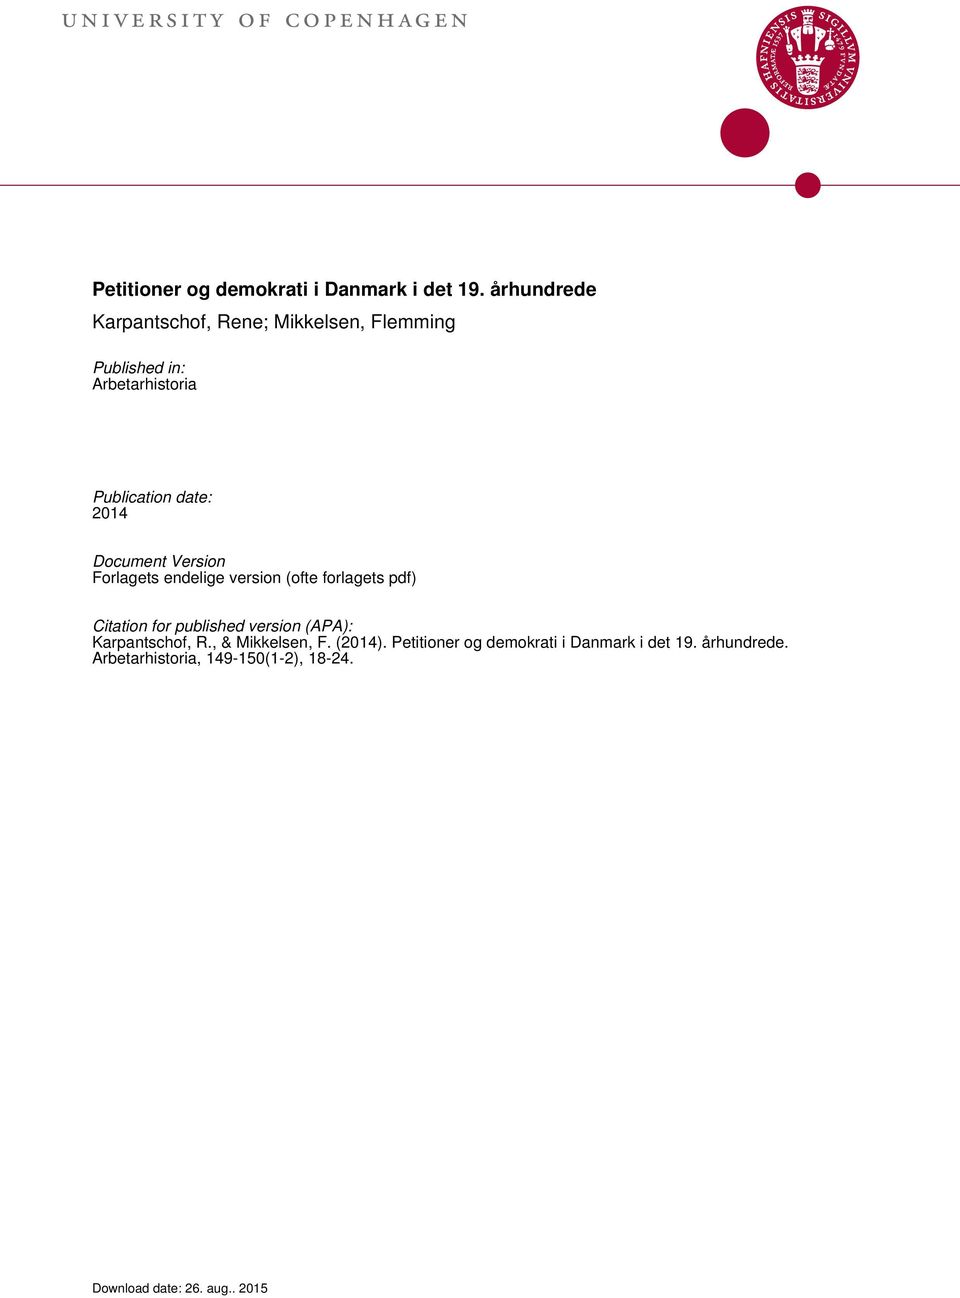 Document Version Forlagets endelige version (ofte forlagets pdf) Citation for published version (APA):